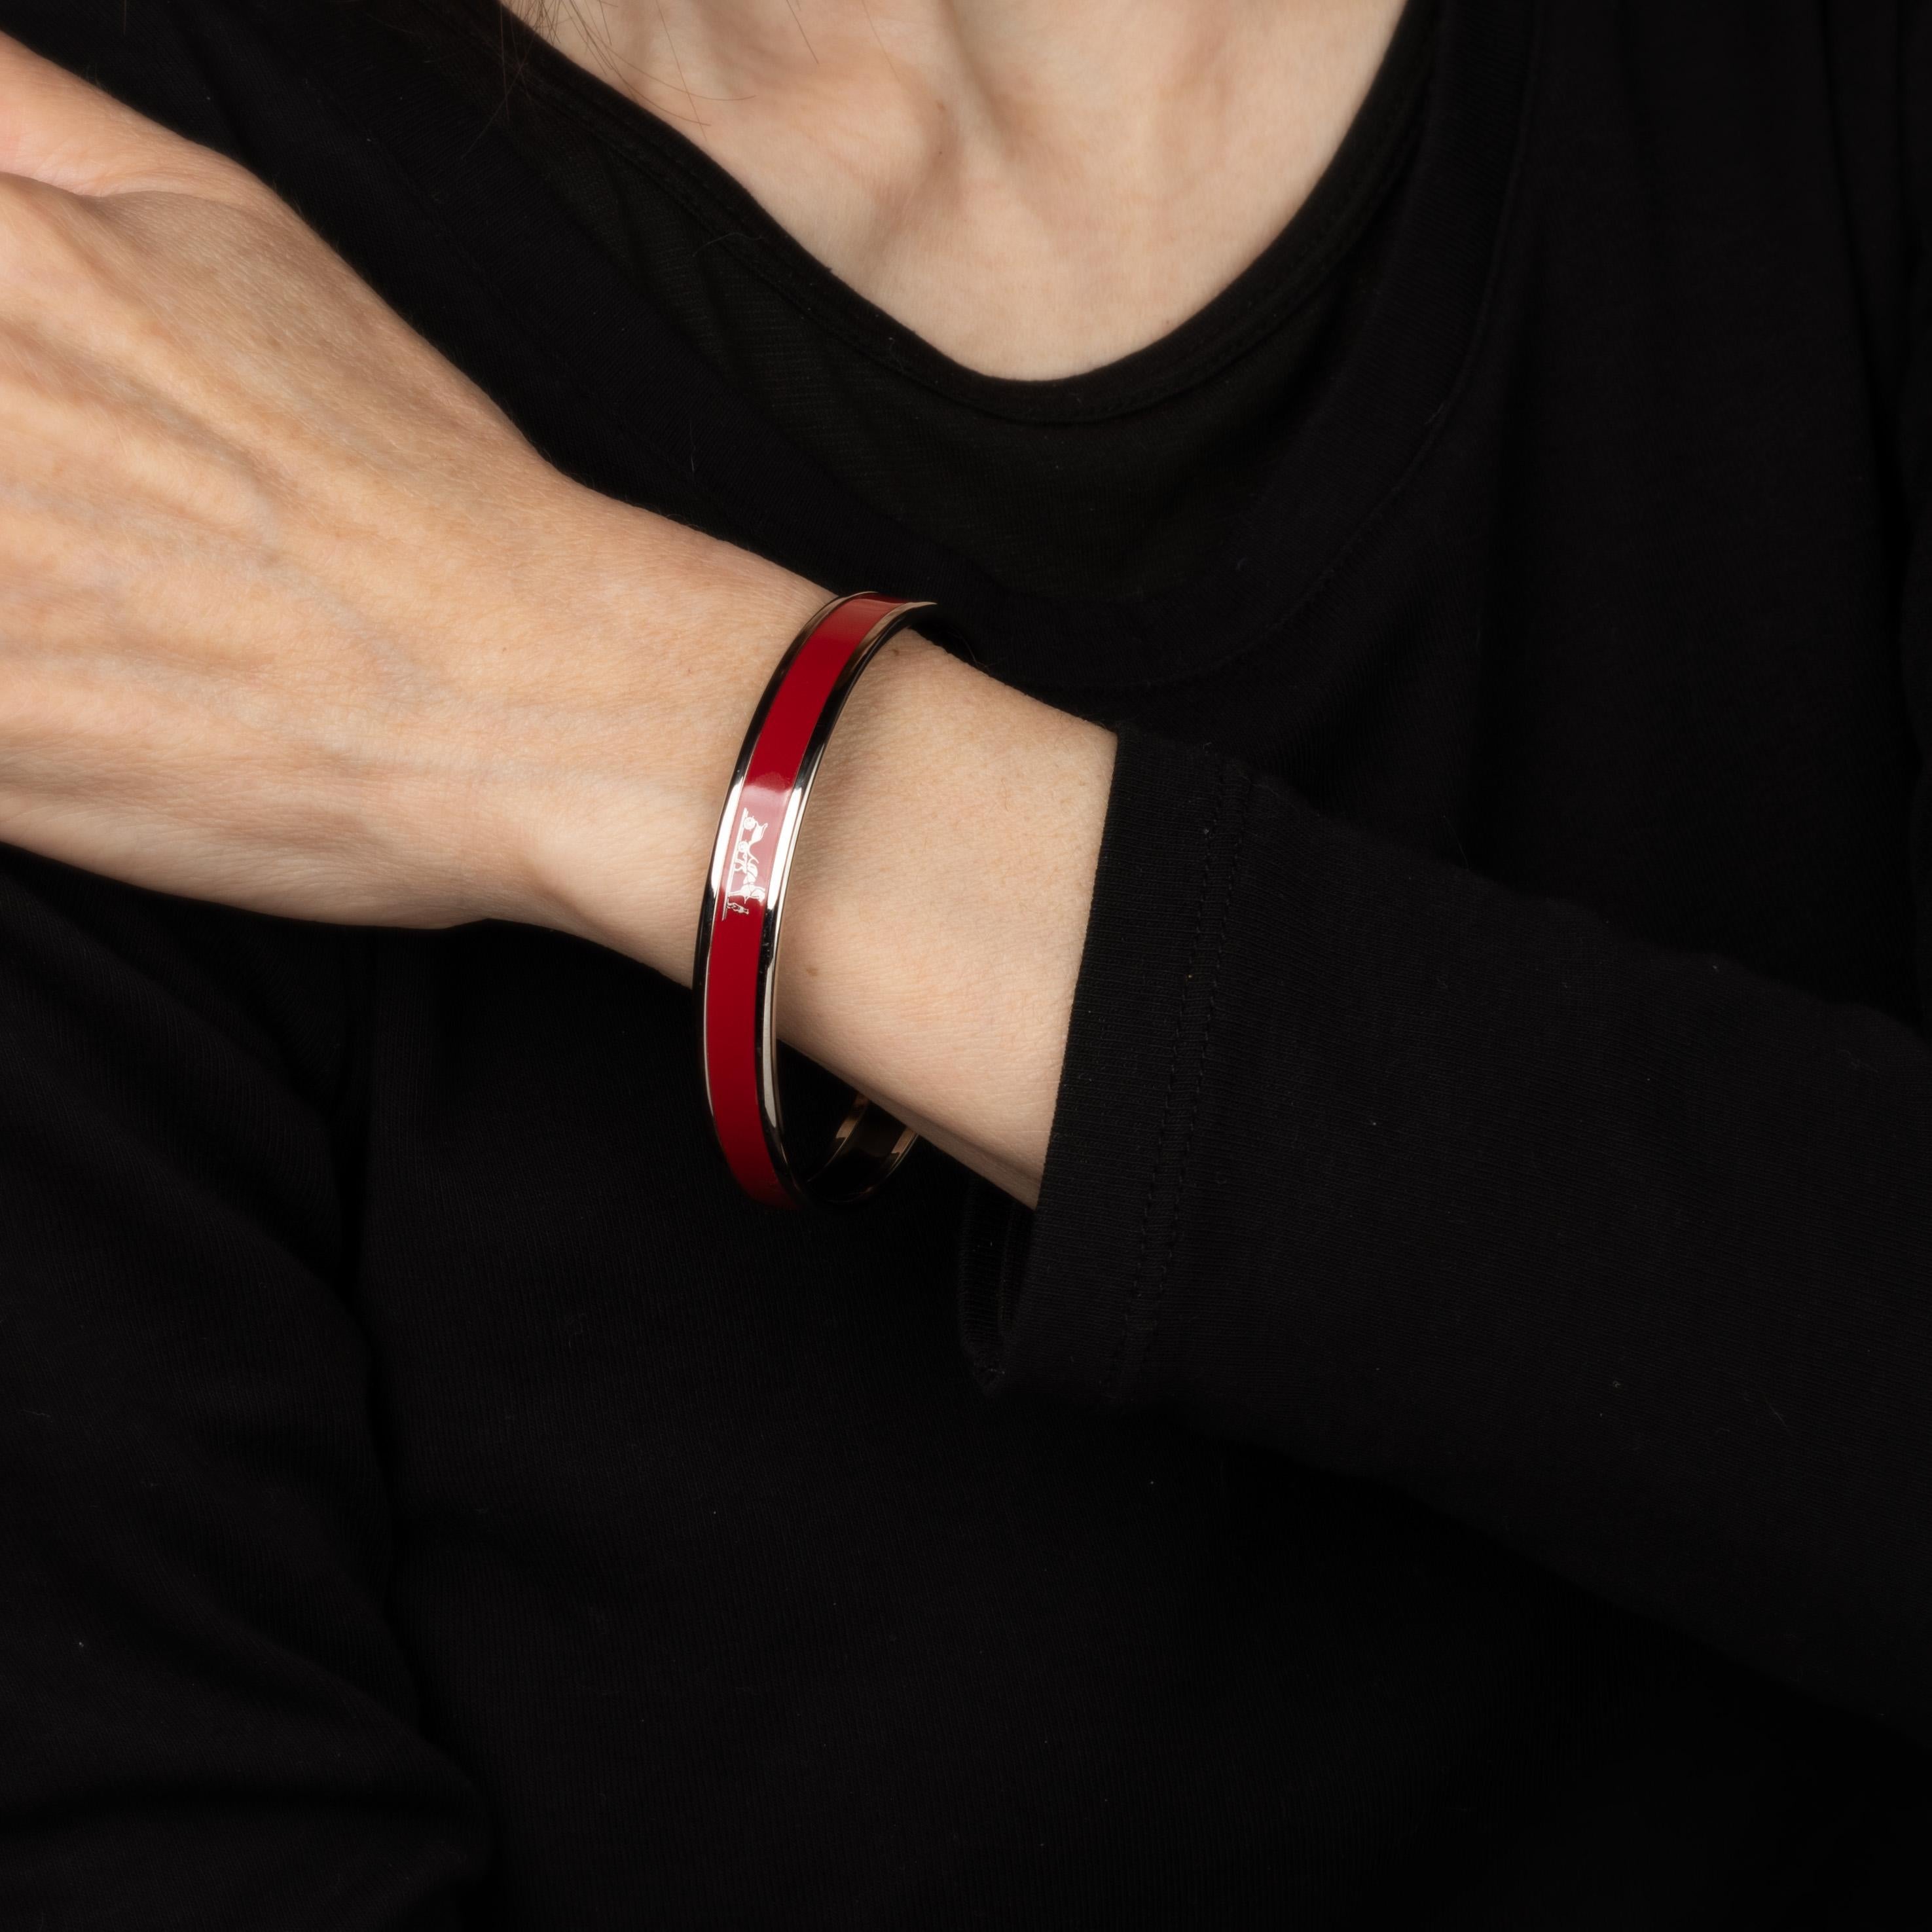 Vue d'ensemble :

Bracelet d'occasion Hermes en émail rouge avec un motif de cheval et de calèche. 

Le bracelet étroit de 0,35